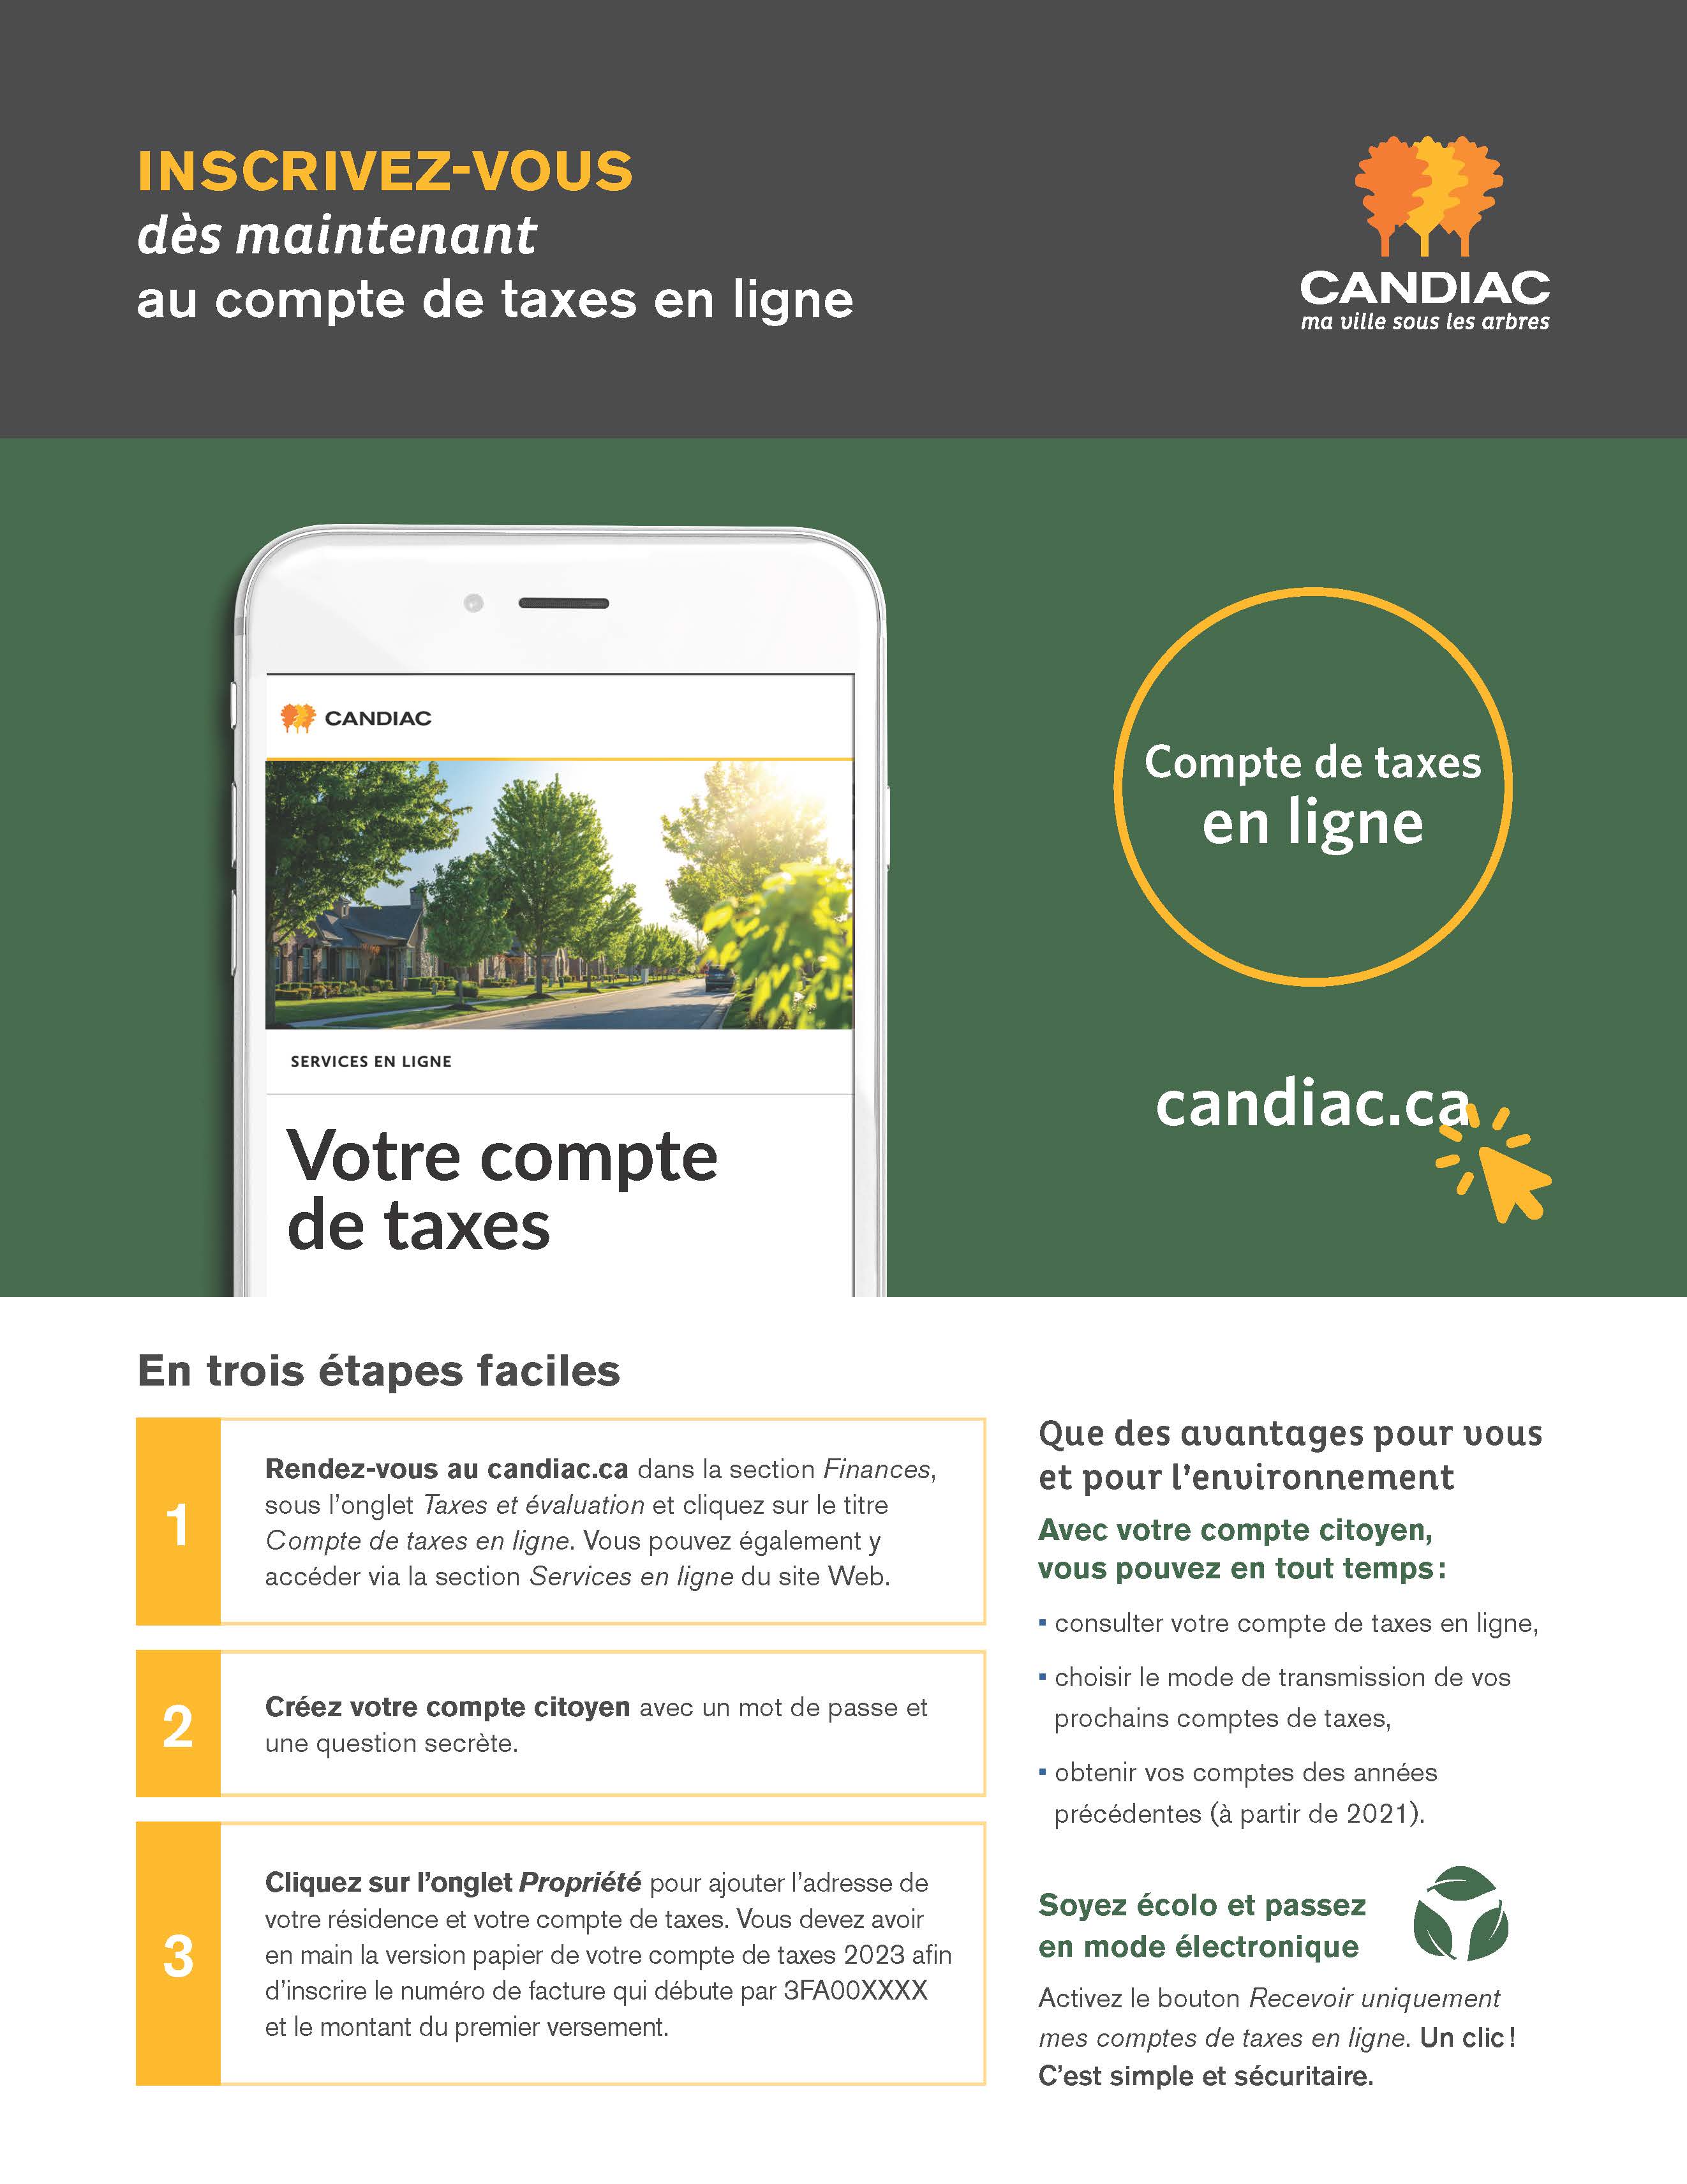 2023_Candiac_Compte_de_taxes_en_ligne_(1).jpg (485 KB)